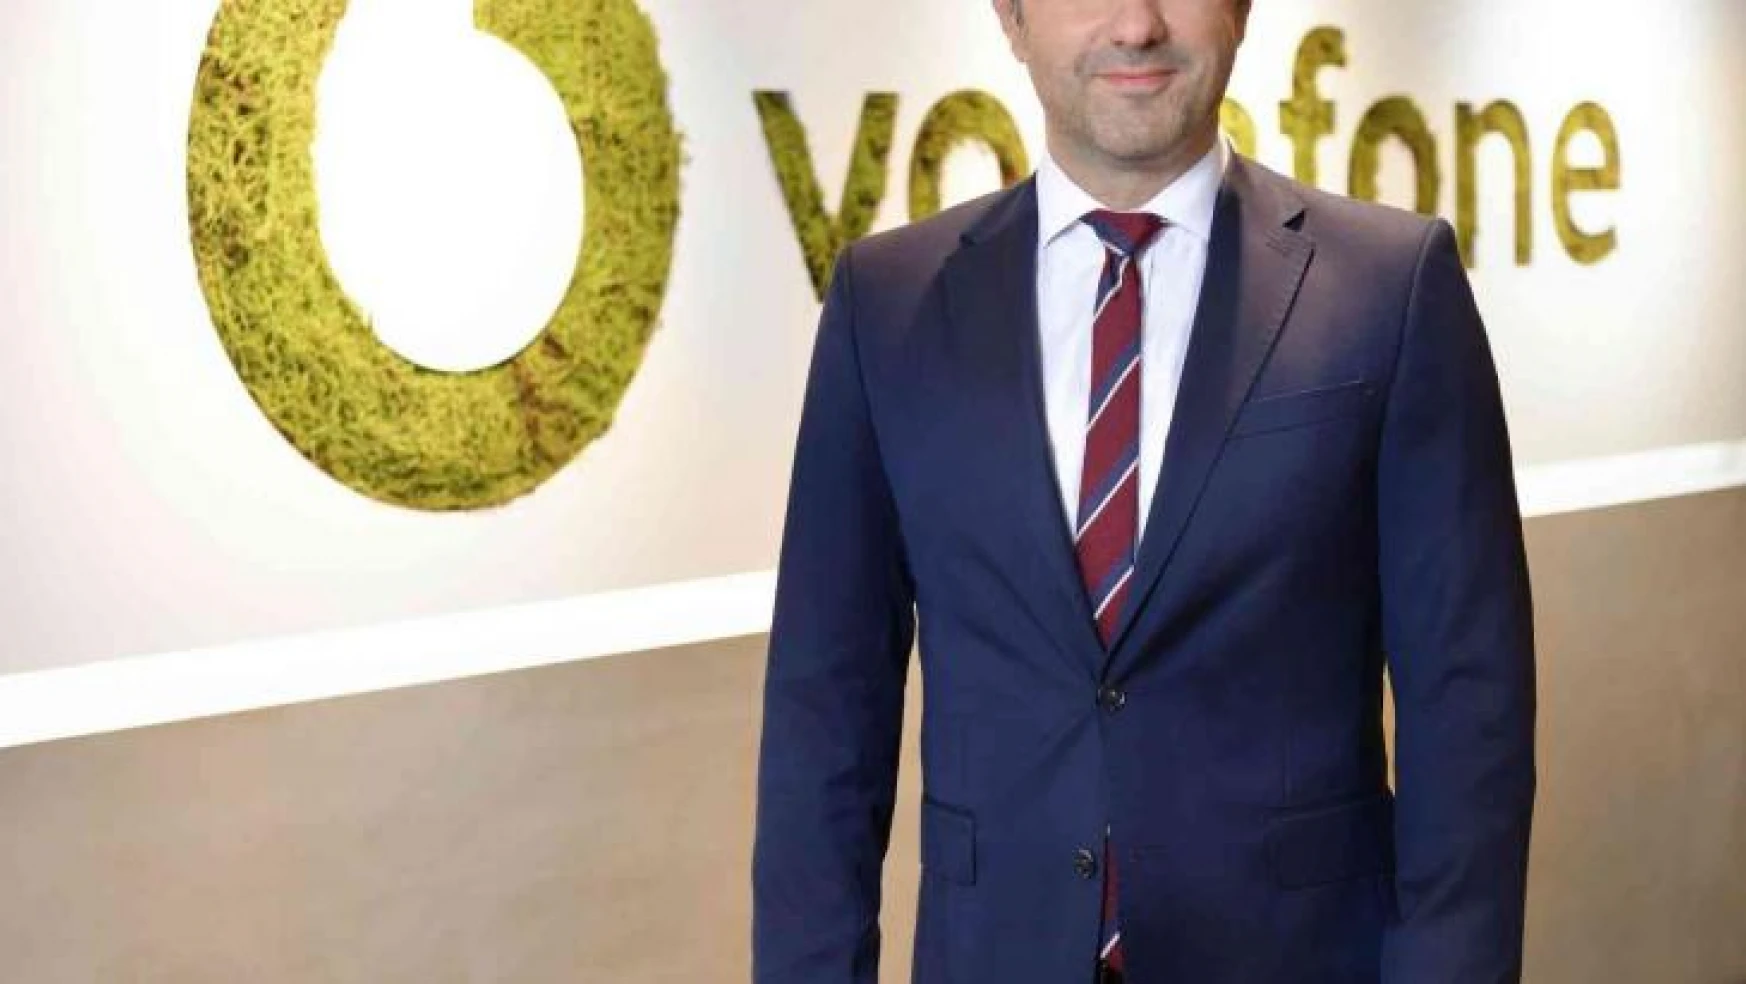 Vodafone Müşteri Hizmetleri'ne 3 uluslararası ödül birden